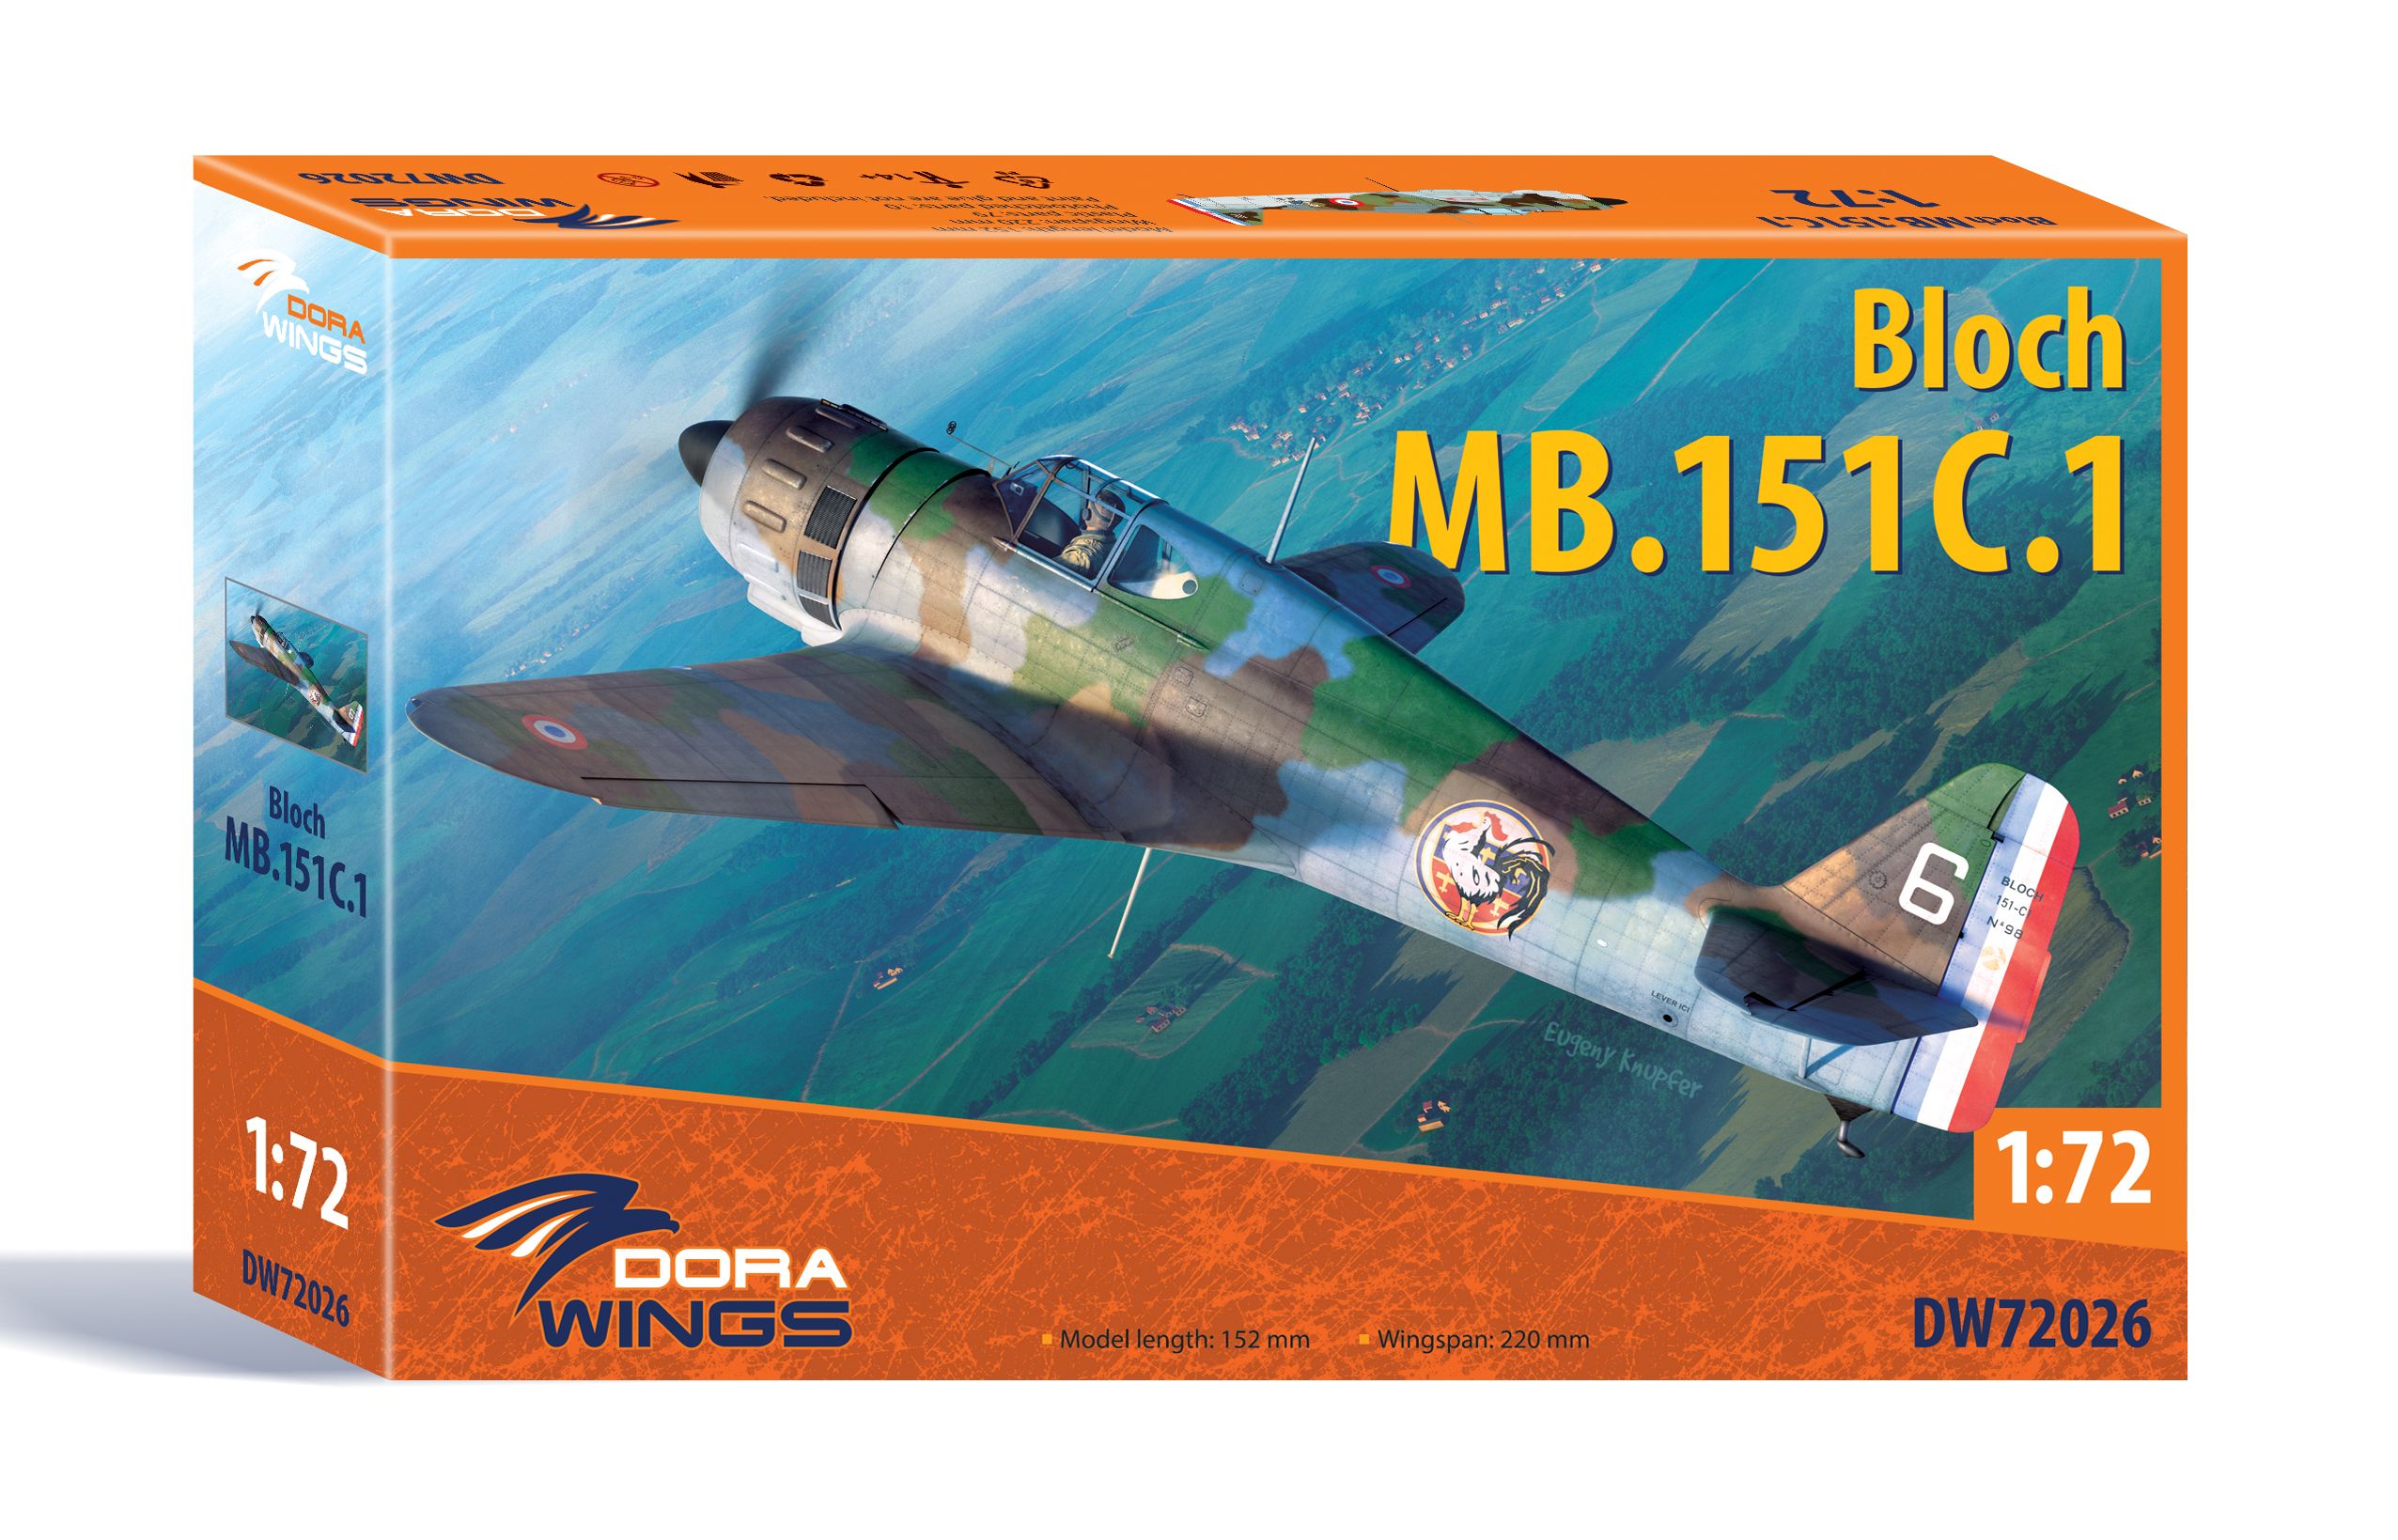 Bloch MB.151 C.1